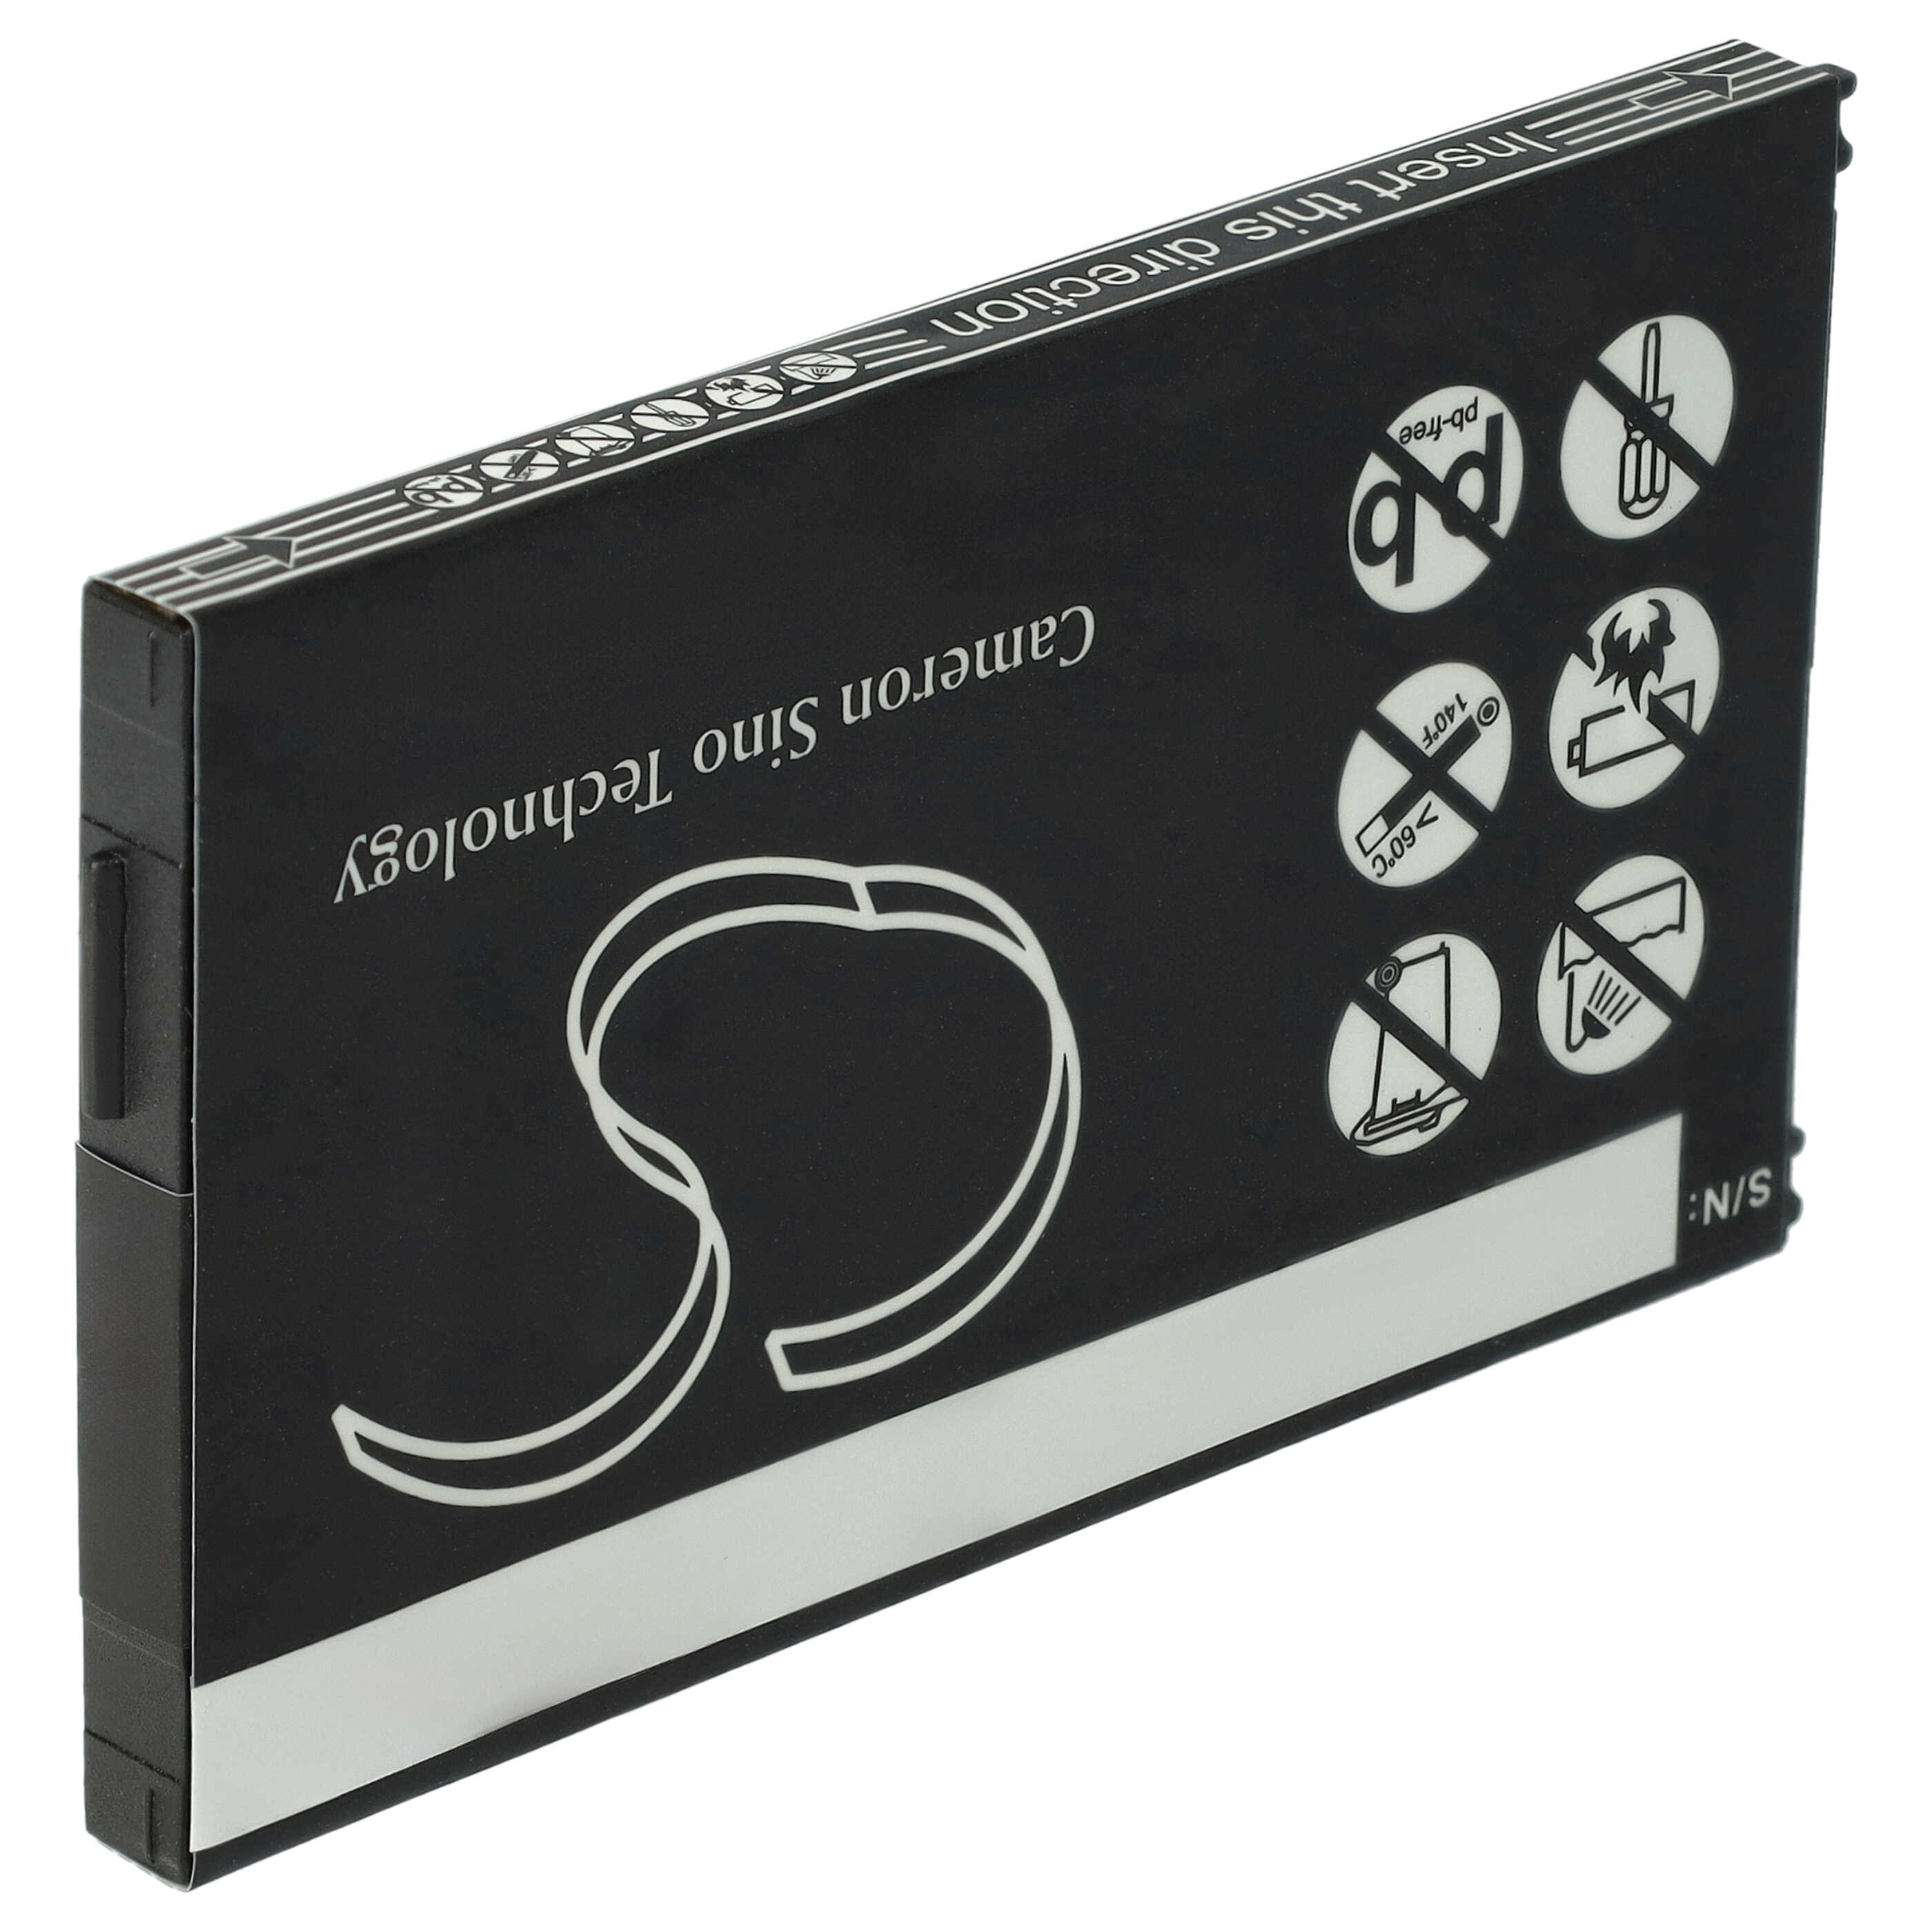 Batterie remplace Doro EASYUSE 3.7/700, DBK-700 pour téléphone portable - 1050mAh, 3,7V, Li-ion